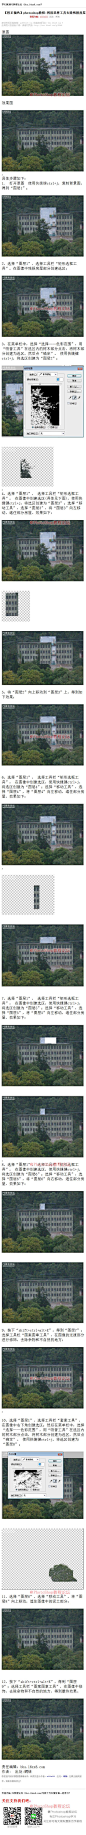 《photoshop教程:利用选择工具去除残损房屋》 原图 效果图 , 具体步骤如下： 1.打开原图使用快捷键ctrl+j，复制背景图，得到“图层1”； 2、选择“图层1”，选择工具栏“矩形选框工具”，在图像中残损房屋部分创建选区； 3、在菜单栏中，选择“选择——色彩范围”，用“吸管工具”在选区内的树木部分点击，将树木部分创建 #www.16xx8.com##ps##photoshop##教程##ps教程##I换背景I#：http://www.16xx8.com/plus/view.php?aid=904